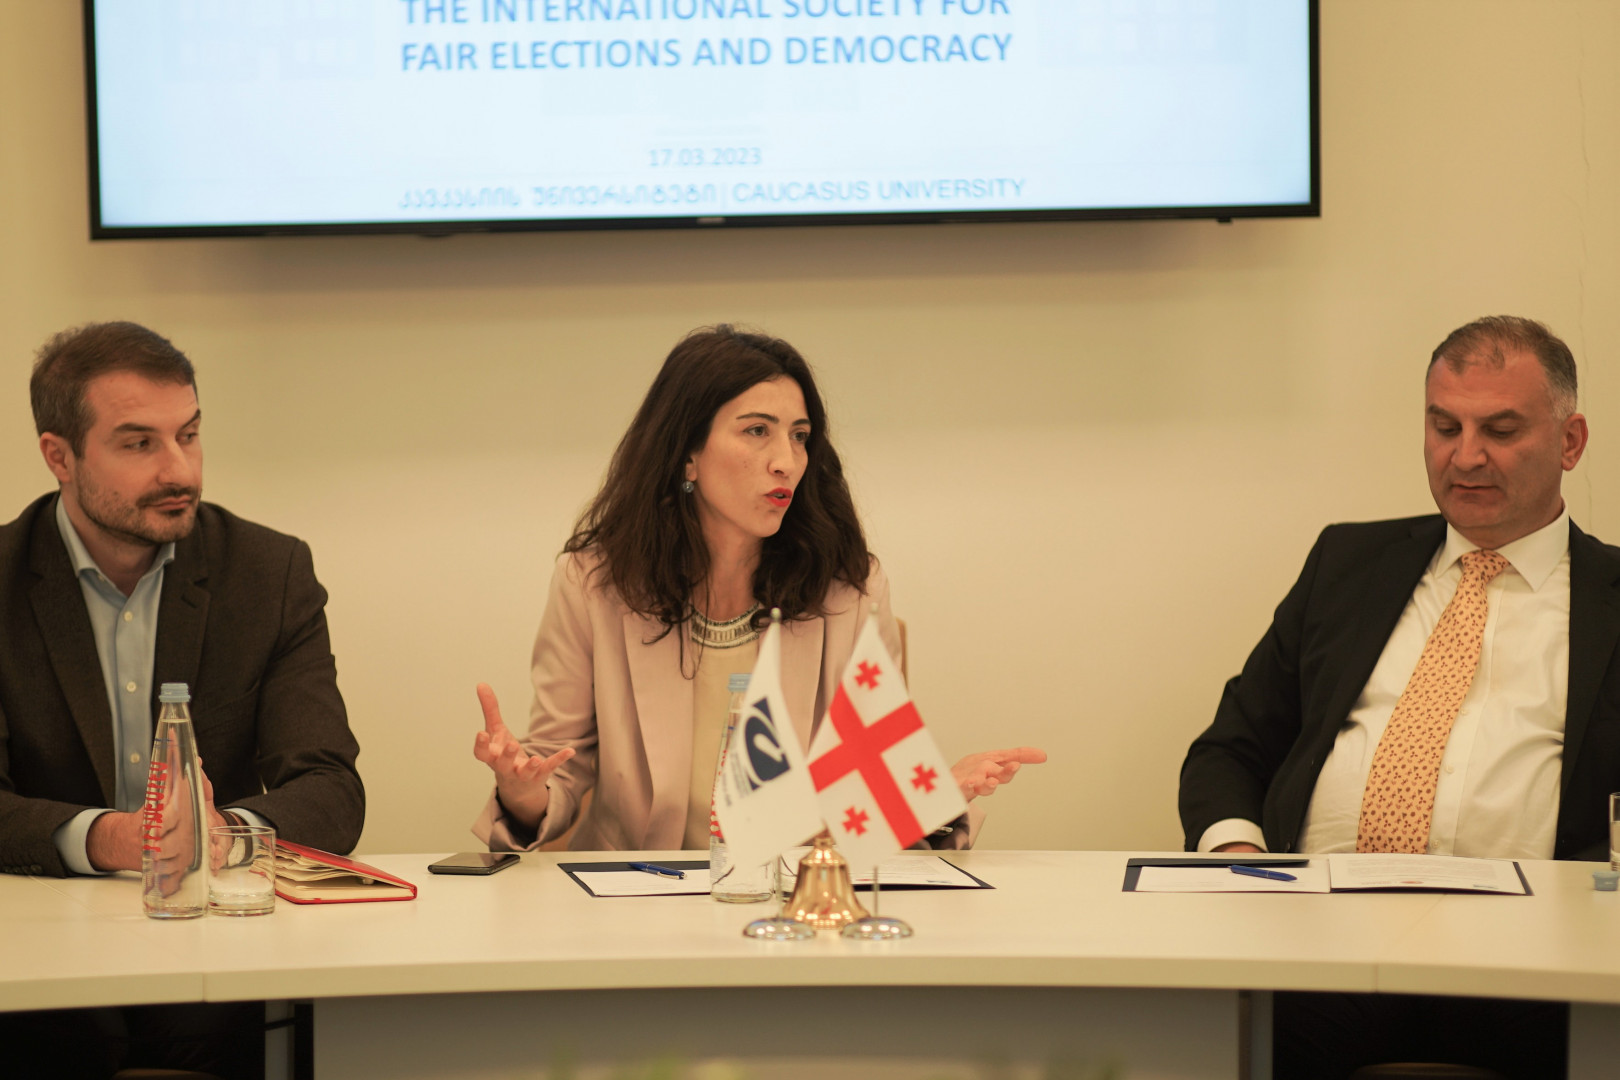 თანამშრომლობის მემორანდუმი არასამთავრობო ორგანიზაცია სამართლიანი არჩევნებისა და დემოკრატიის საერთაშორისო საზოგადოებასთან (ISFED)